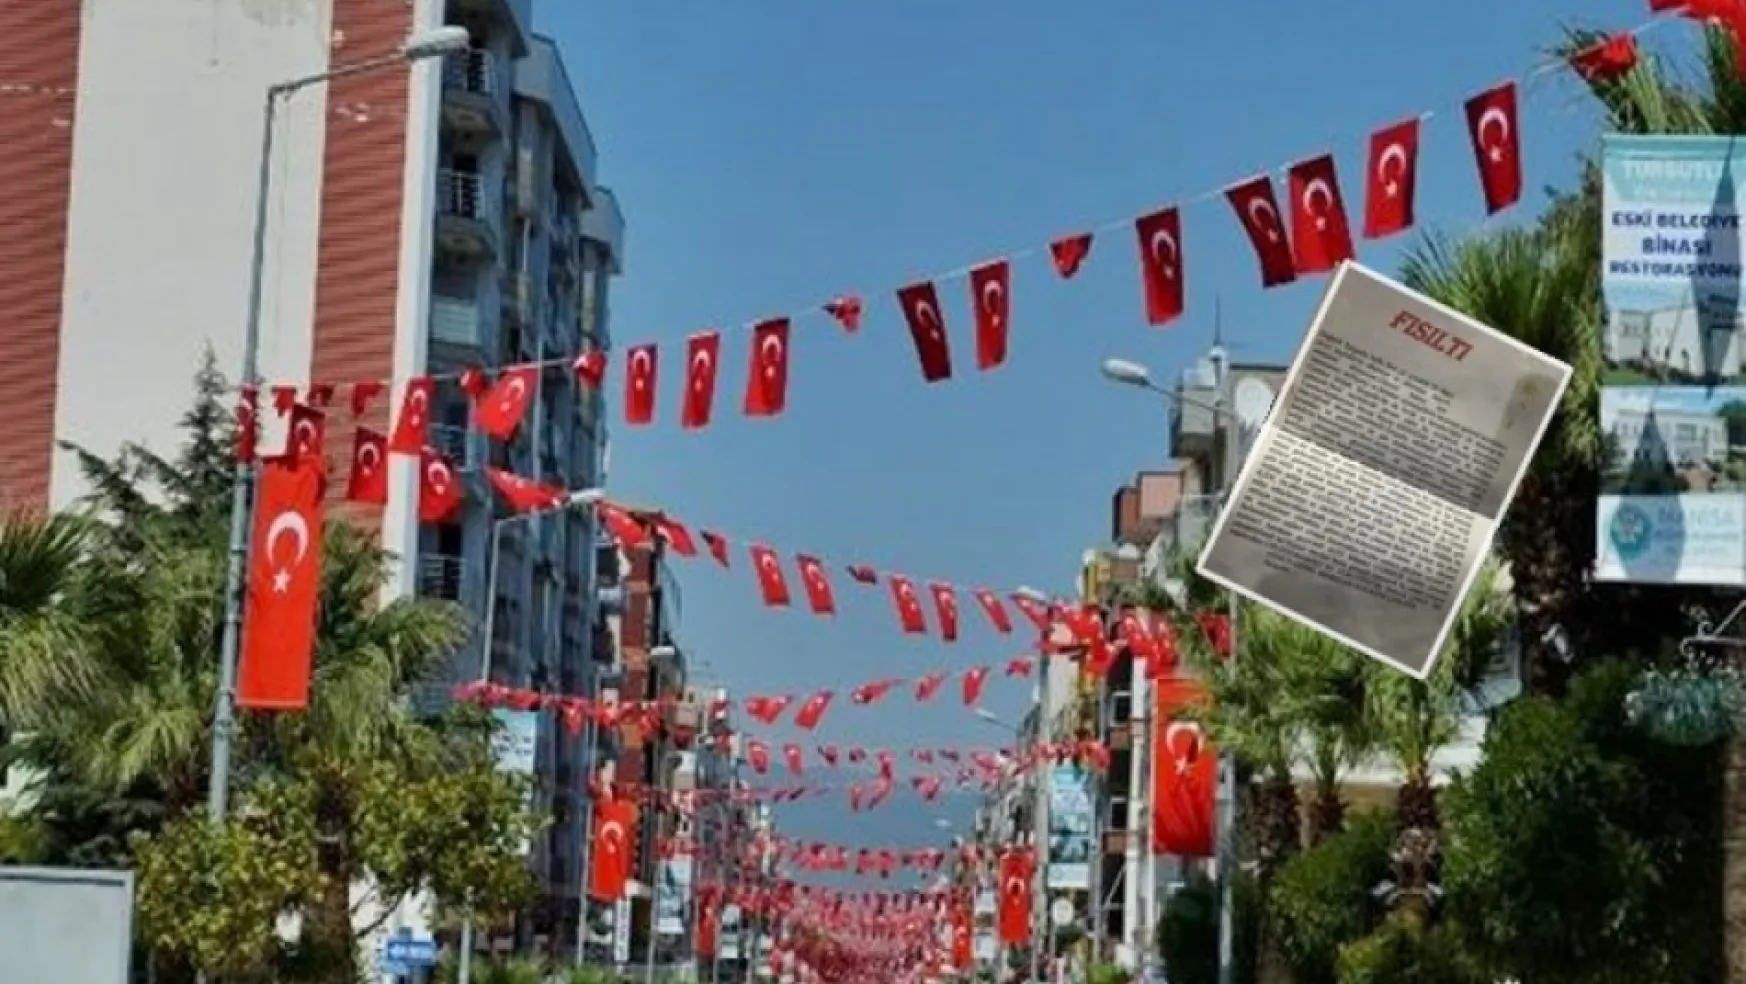 Turgutlu Sokaklarında İzinsiz dağıldığı iddia edilen Korsan Bildiri...